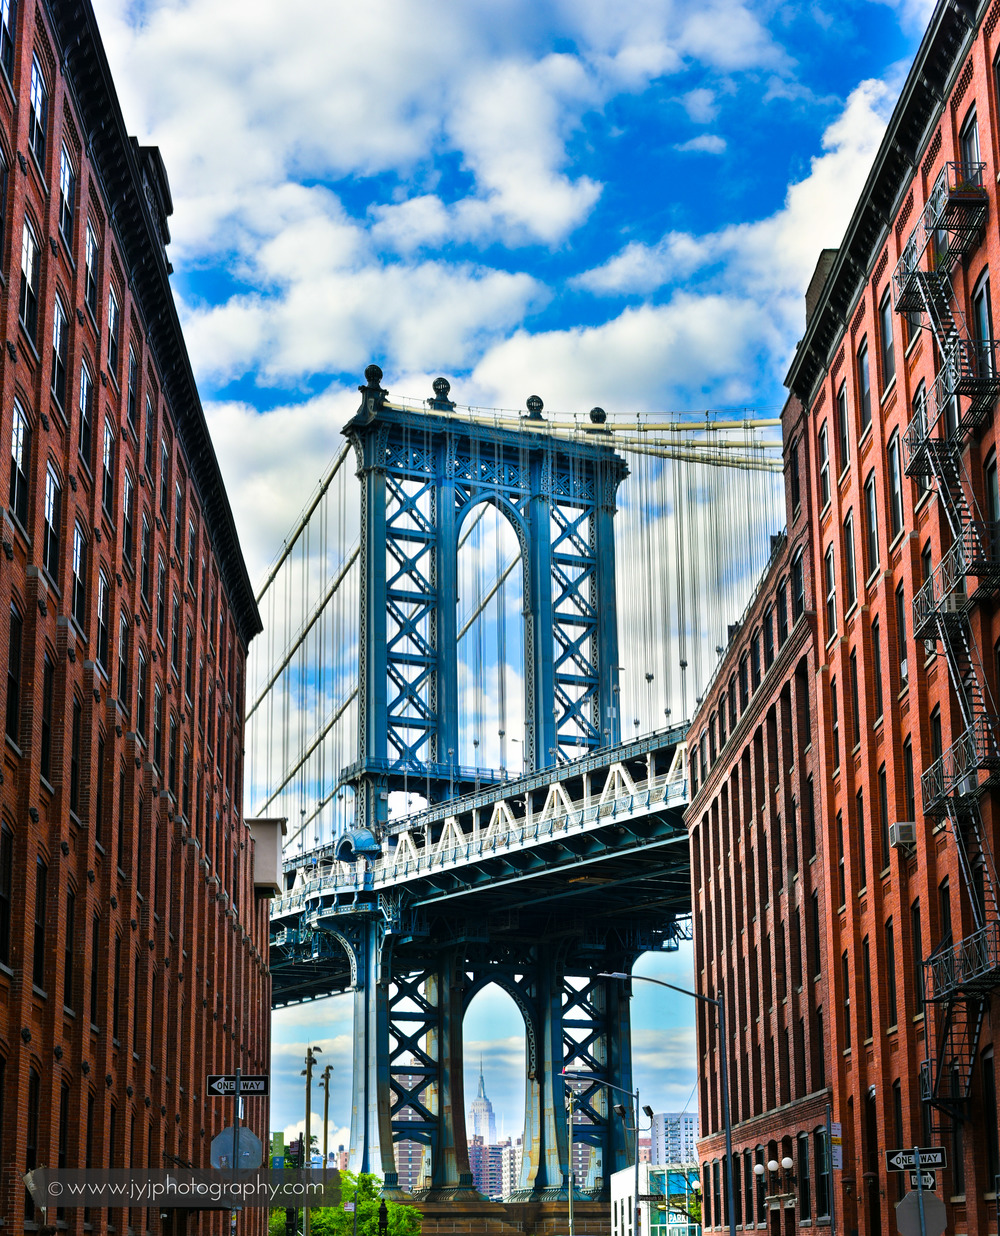   Manhattan Bridge. Image shot at Water Street and Washington Street.  